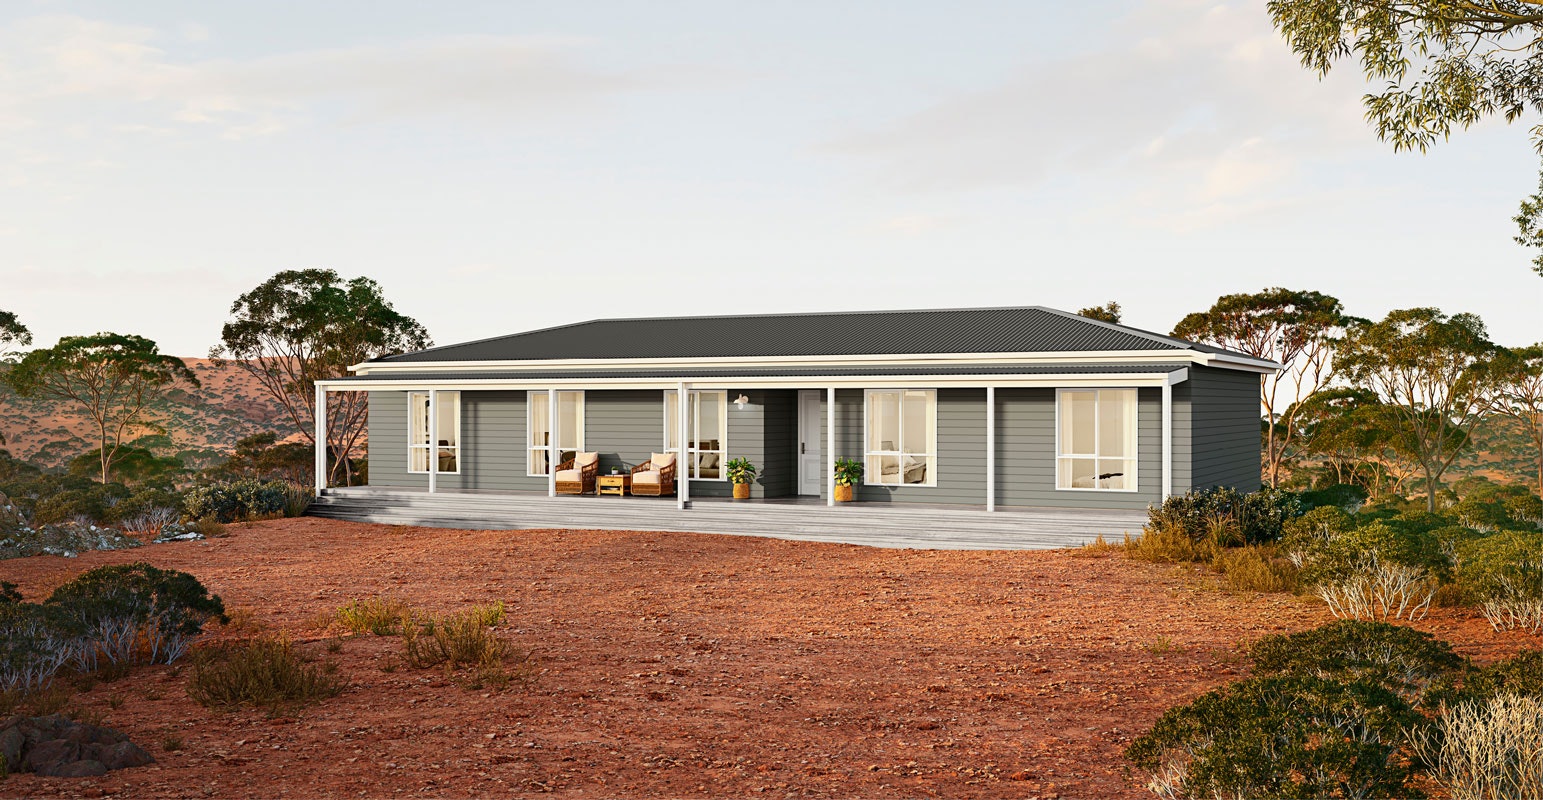 Coonawarra – Ranch Style 4 Bedroom Home Design